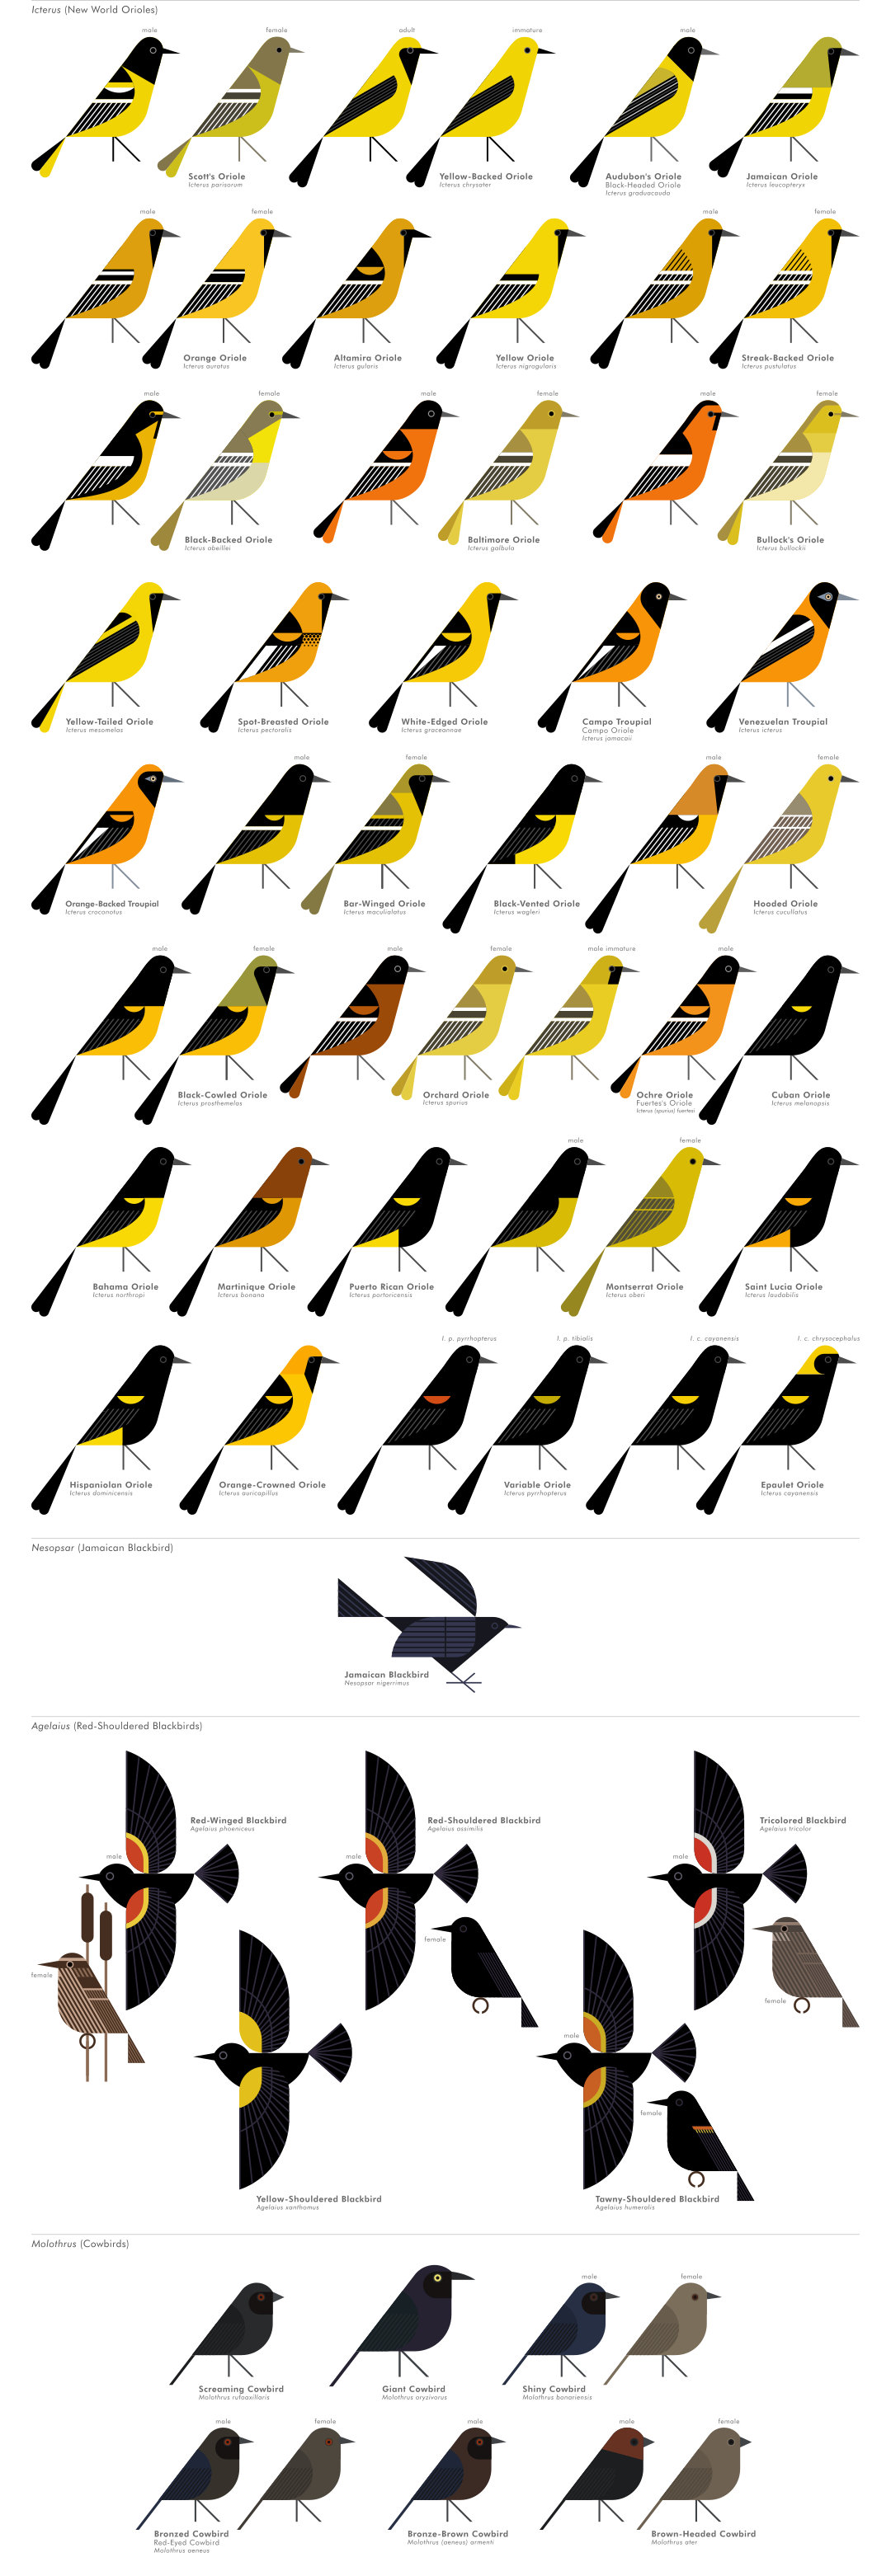 scott partridge - AVE - avian vector encyclopedia - cowbirds and orioles - bird vector art